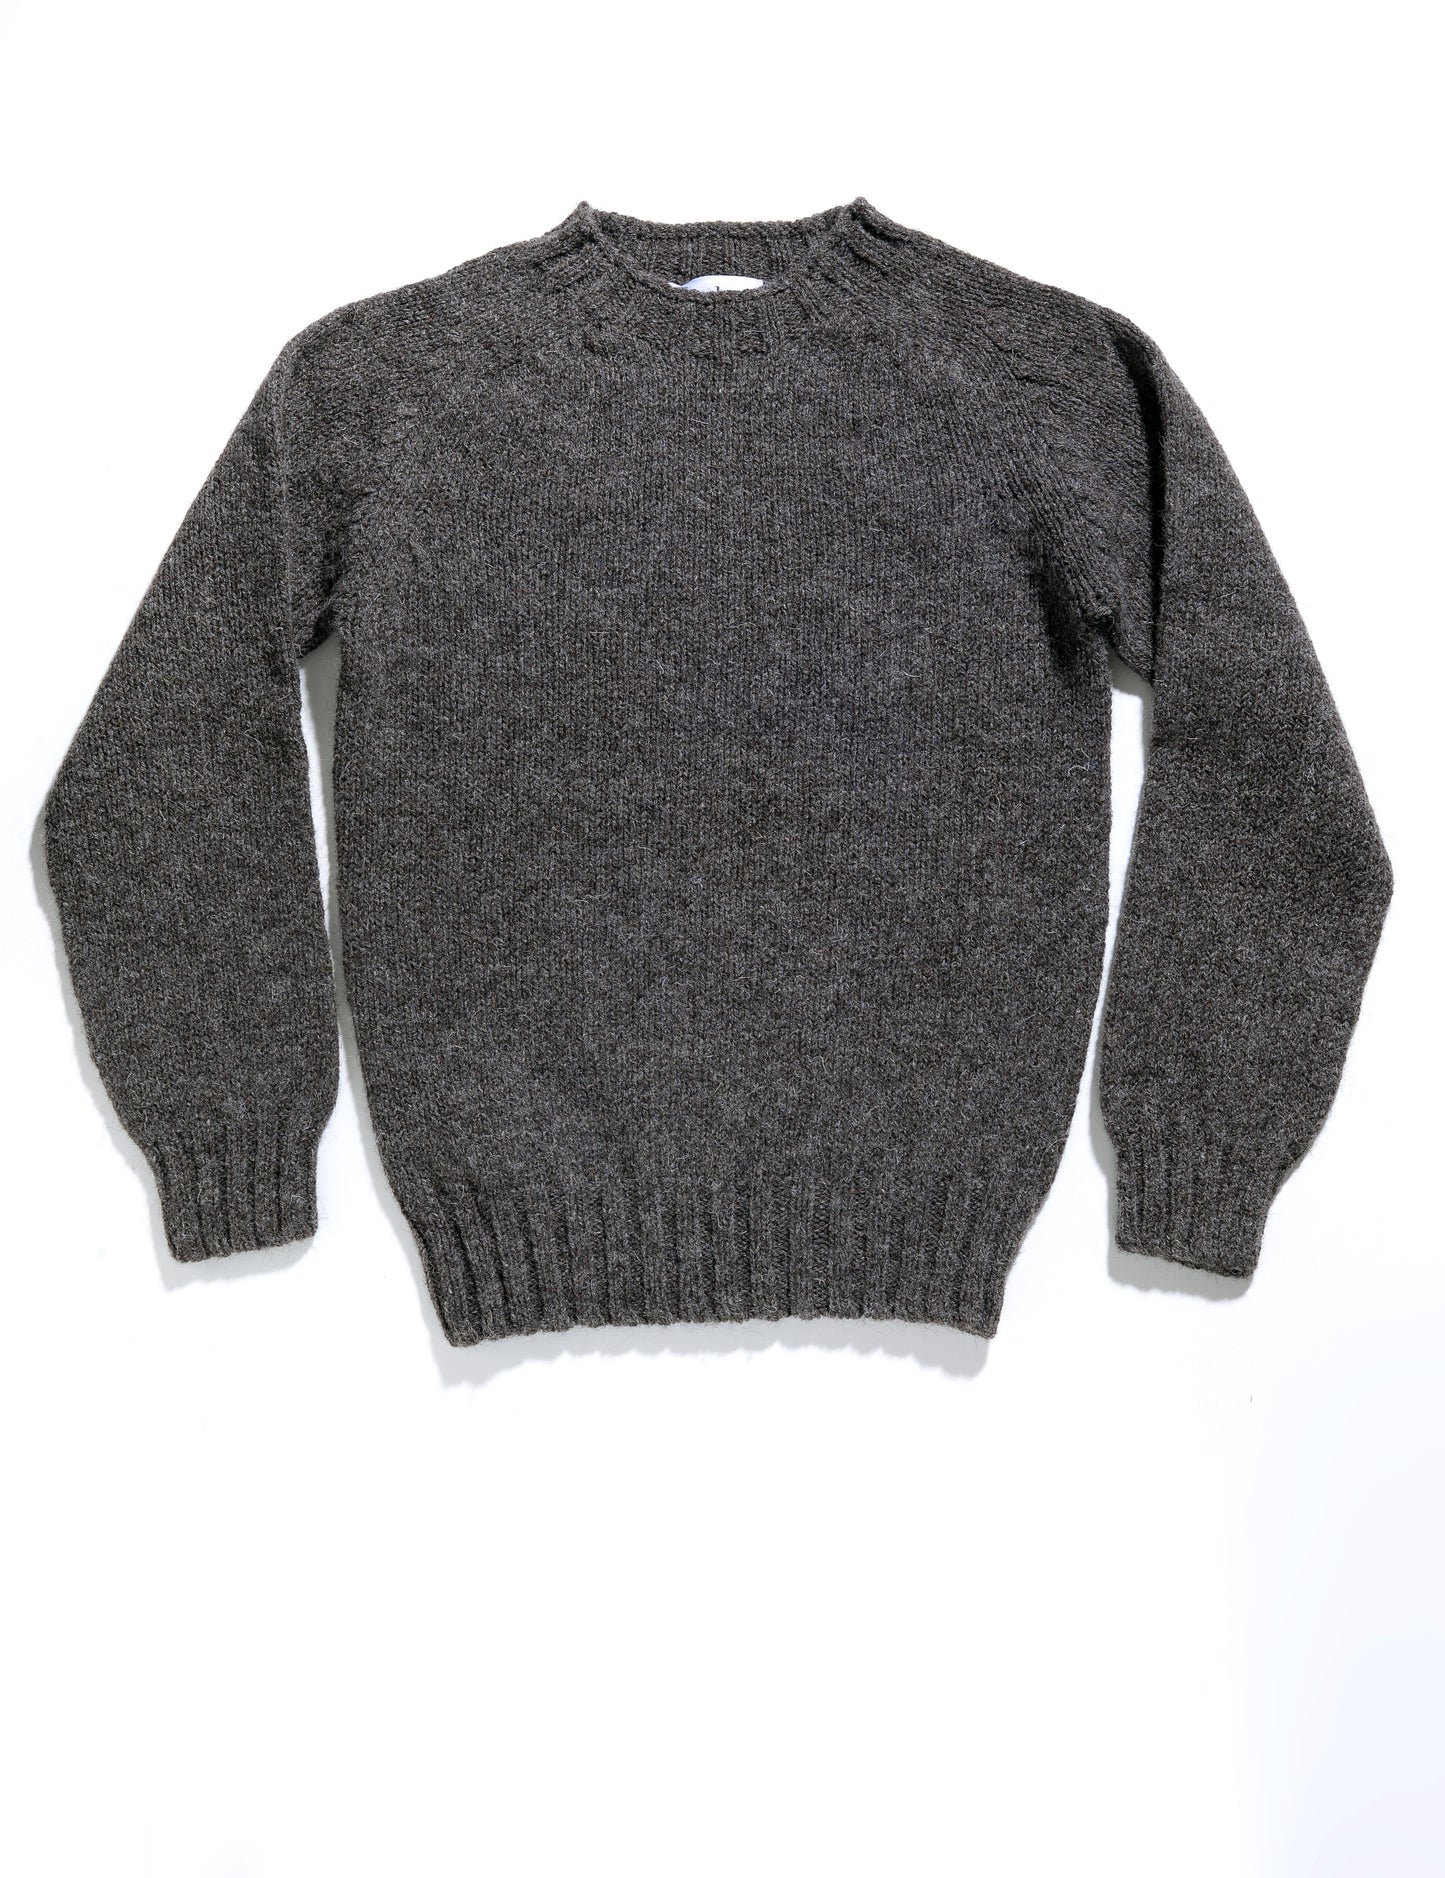 British Heritage Natural Wool Sweater - Balwen